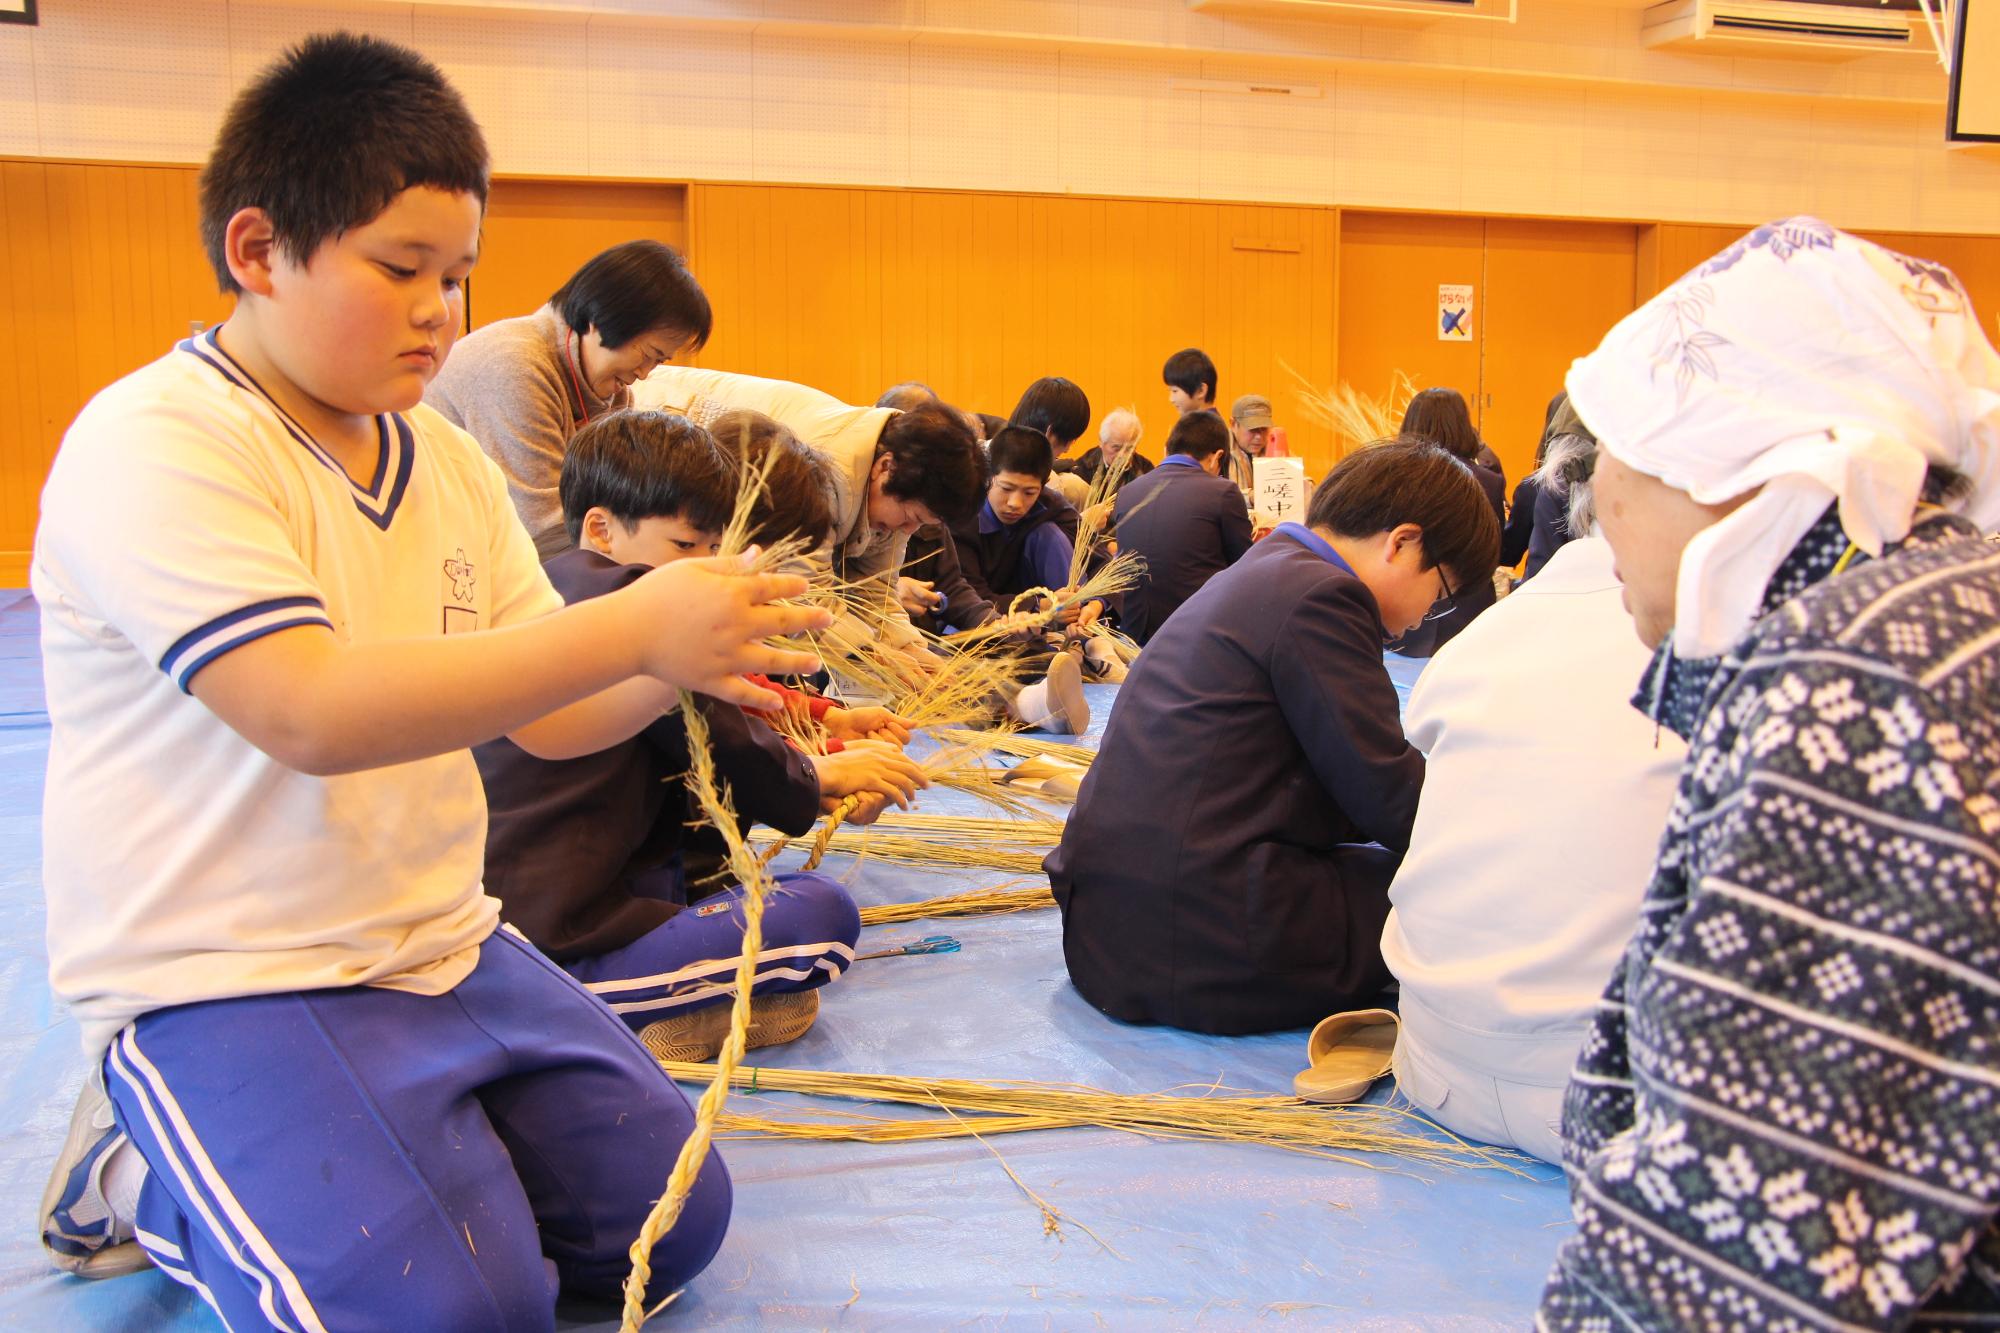 しめ縄作り体験で自分でわらを編んで縄を作っている小学生